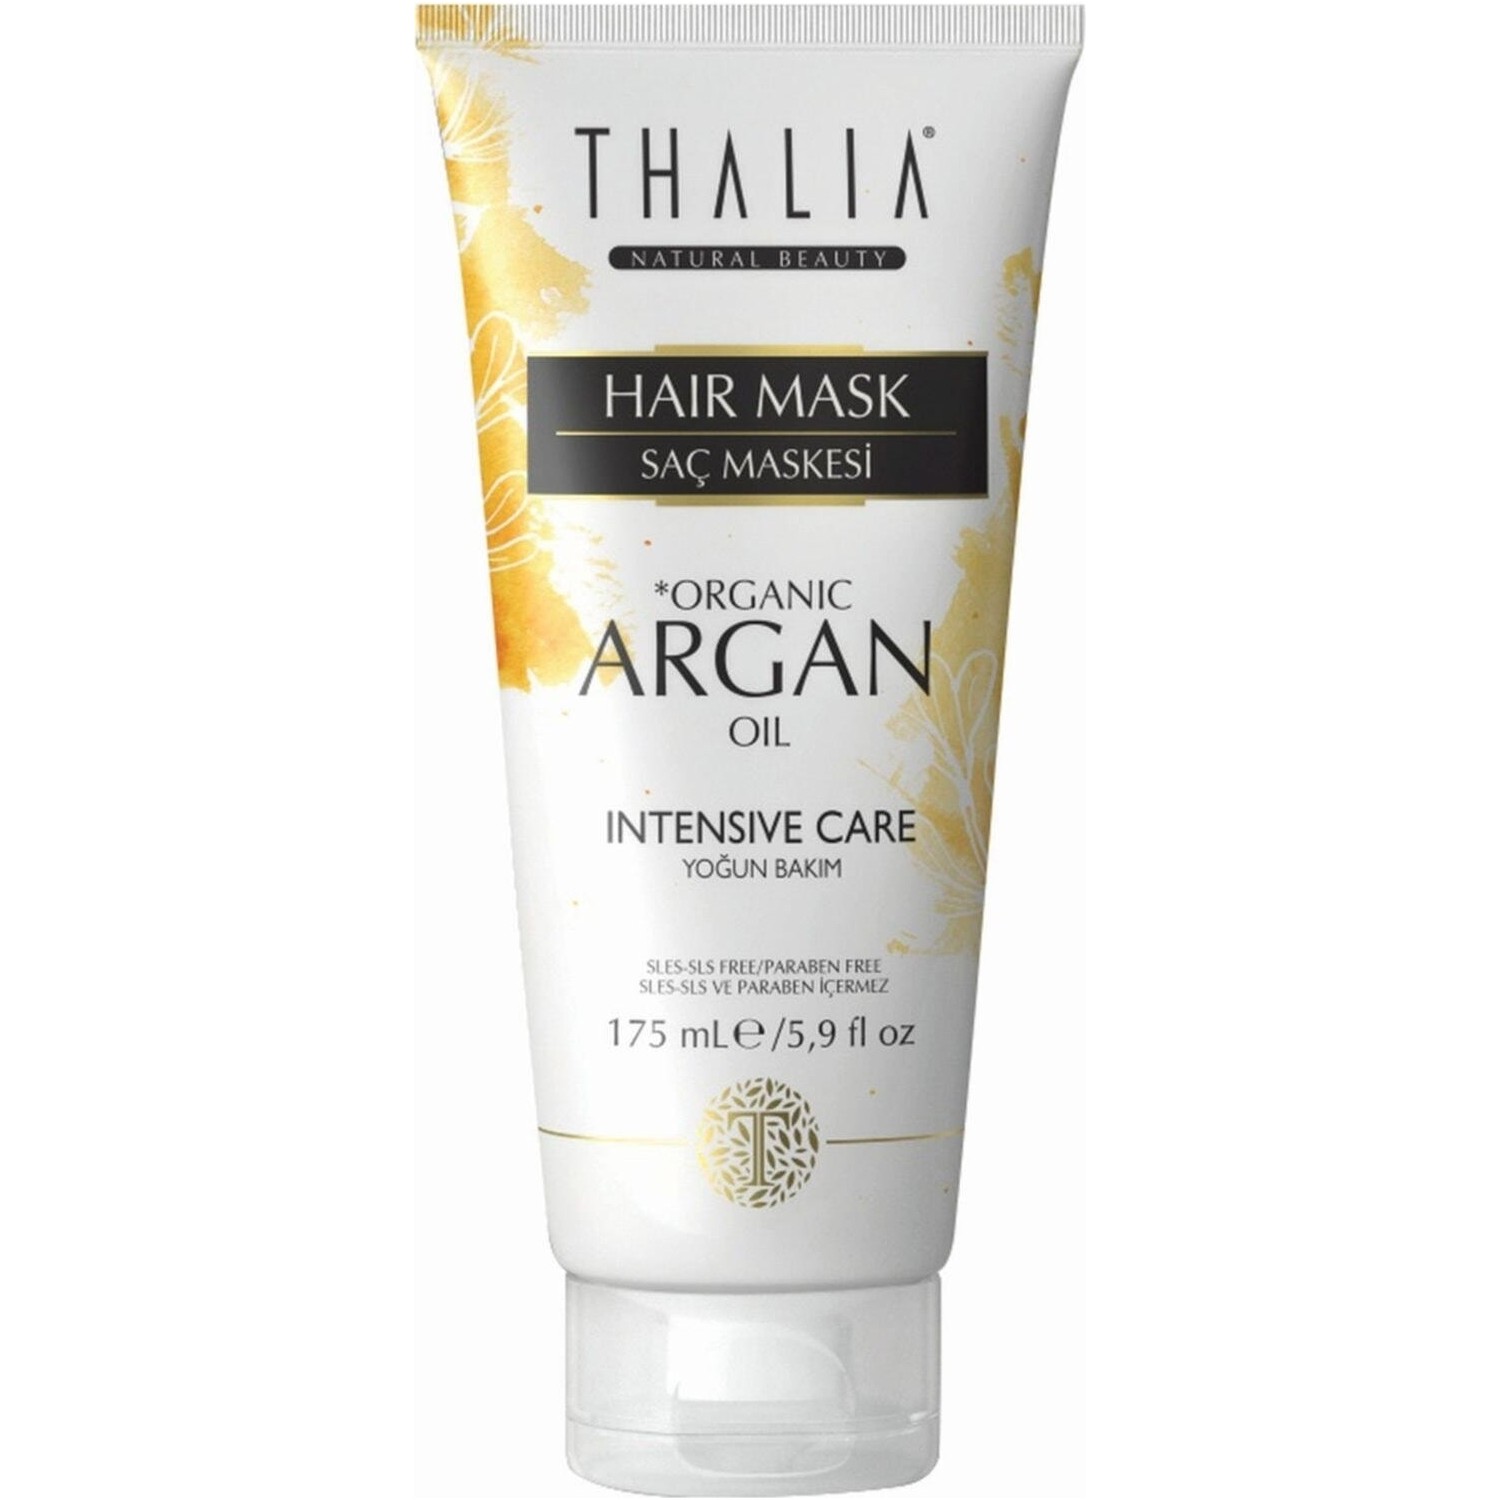 Увлажняющая маска Thalia Organic Argan Oil для волос, 175 мл шампунь против выпадения волос thalia с органическим аргановым маслом 2 x 300 мл